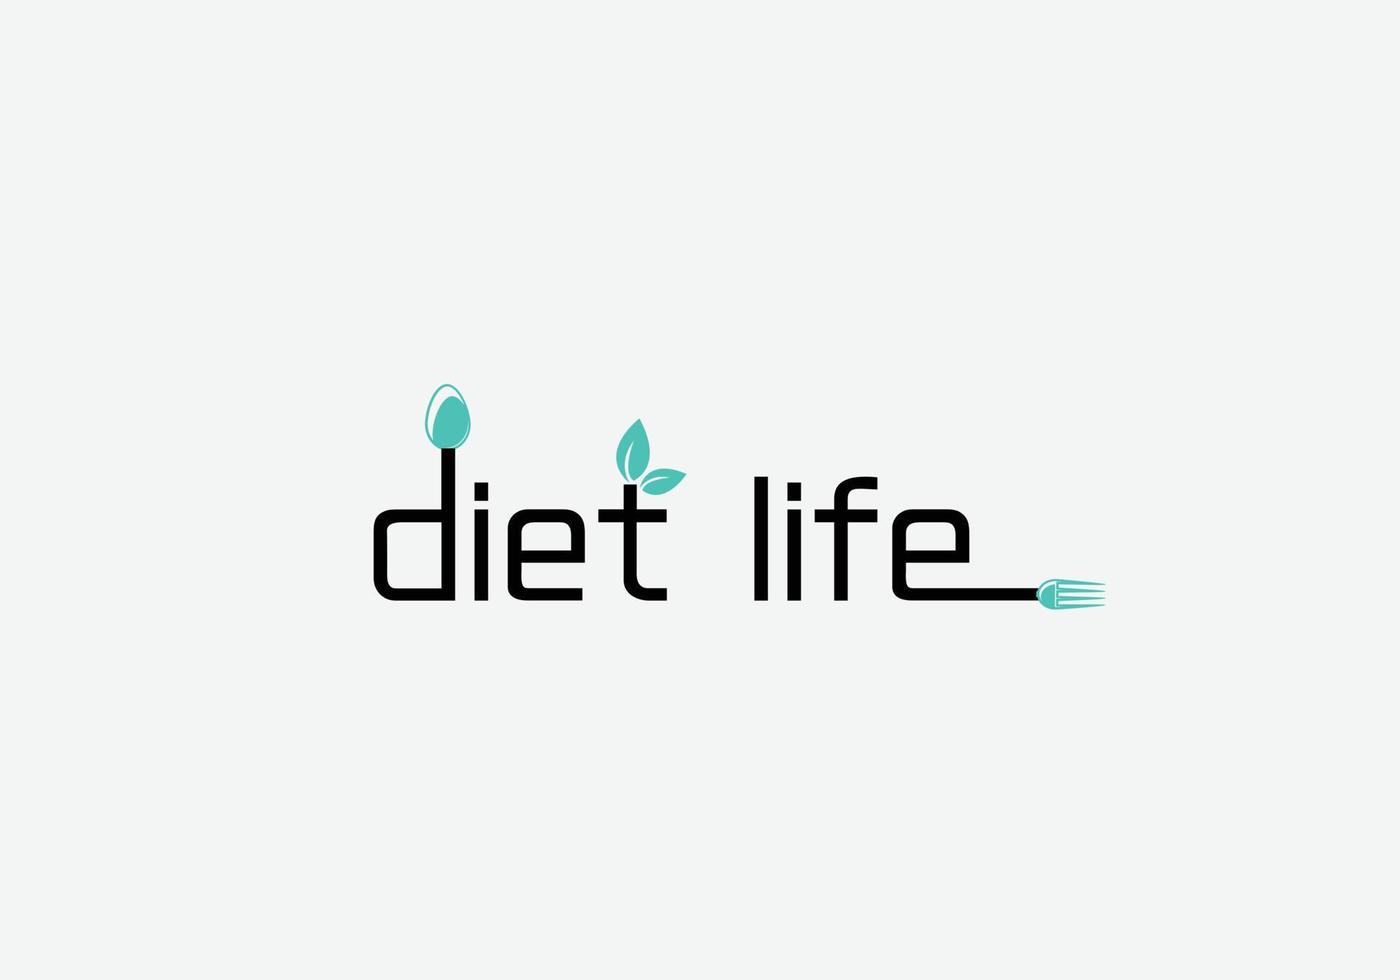 dieta vita astratto ristorante emblema logo design vettore